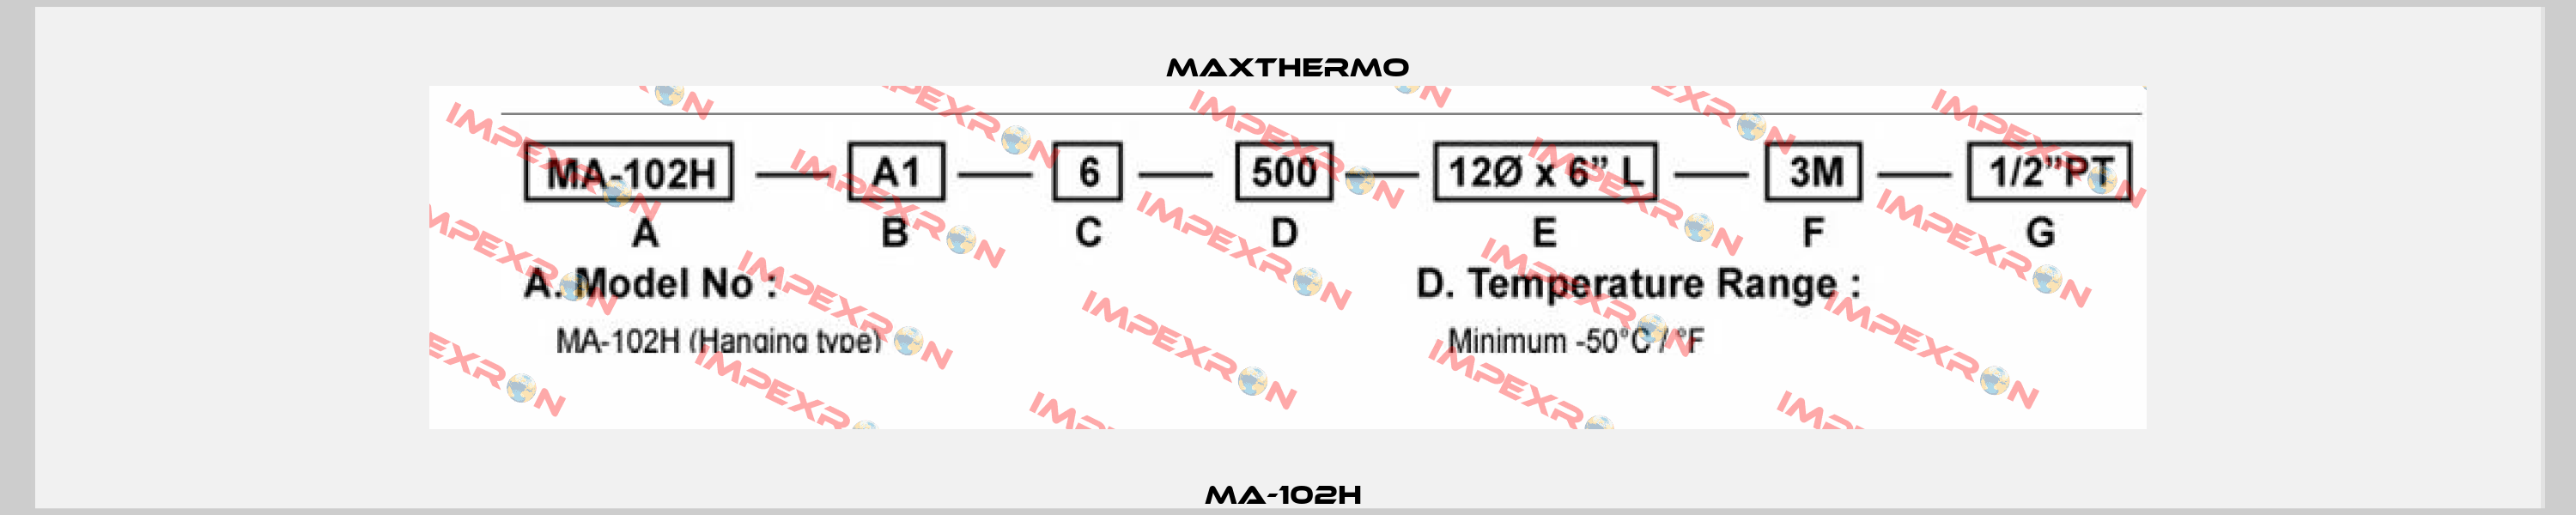 MA-102H  Maxthermo